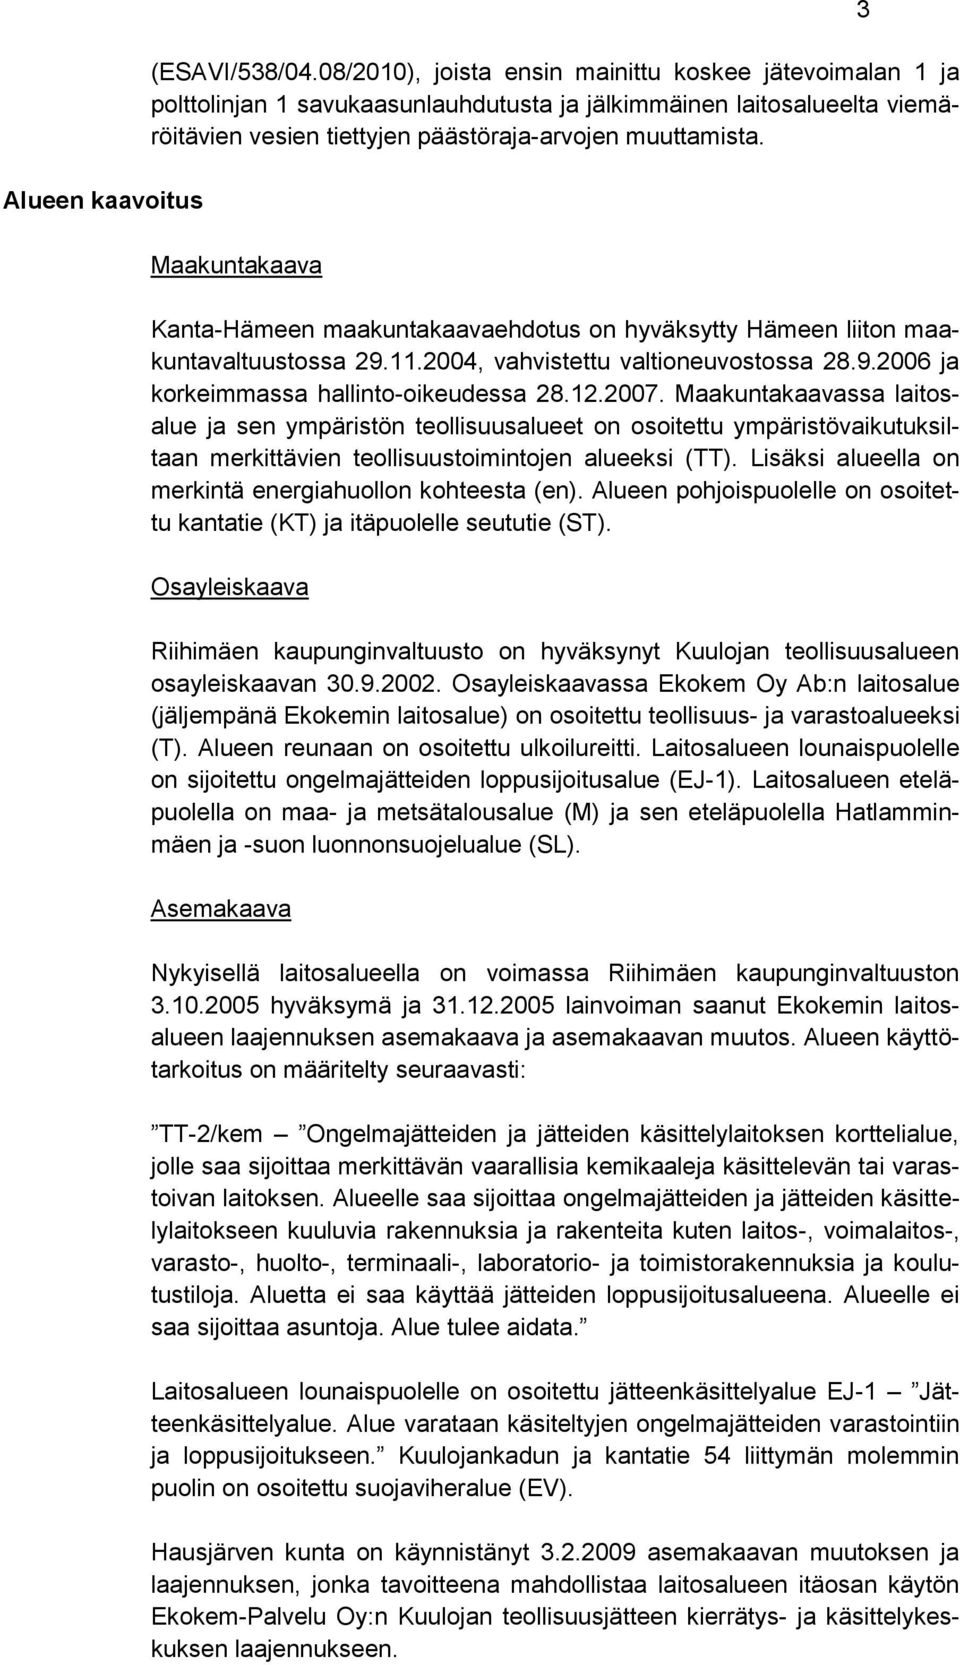 Maakuntakaava Kanta-Hämeen maakuntakaavaehdotus on hyväksytty Hämeen liiton maakuntavaltuustossa 29.11.2004, vahvistettu valtioneuvostossa 28.9.2006 ja korkeimmassa hallinto-oikeudessa 28.12.2007.